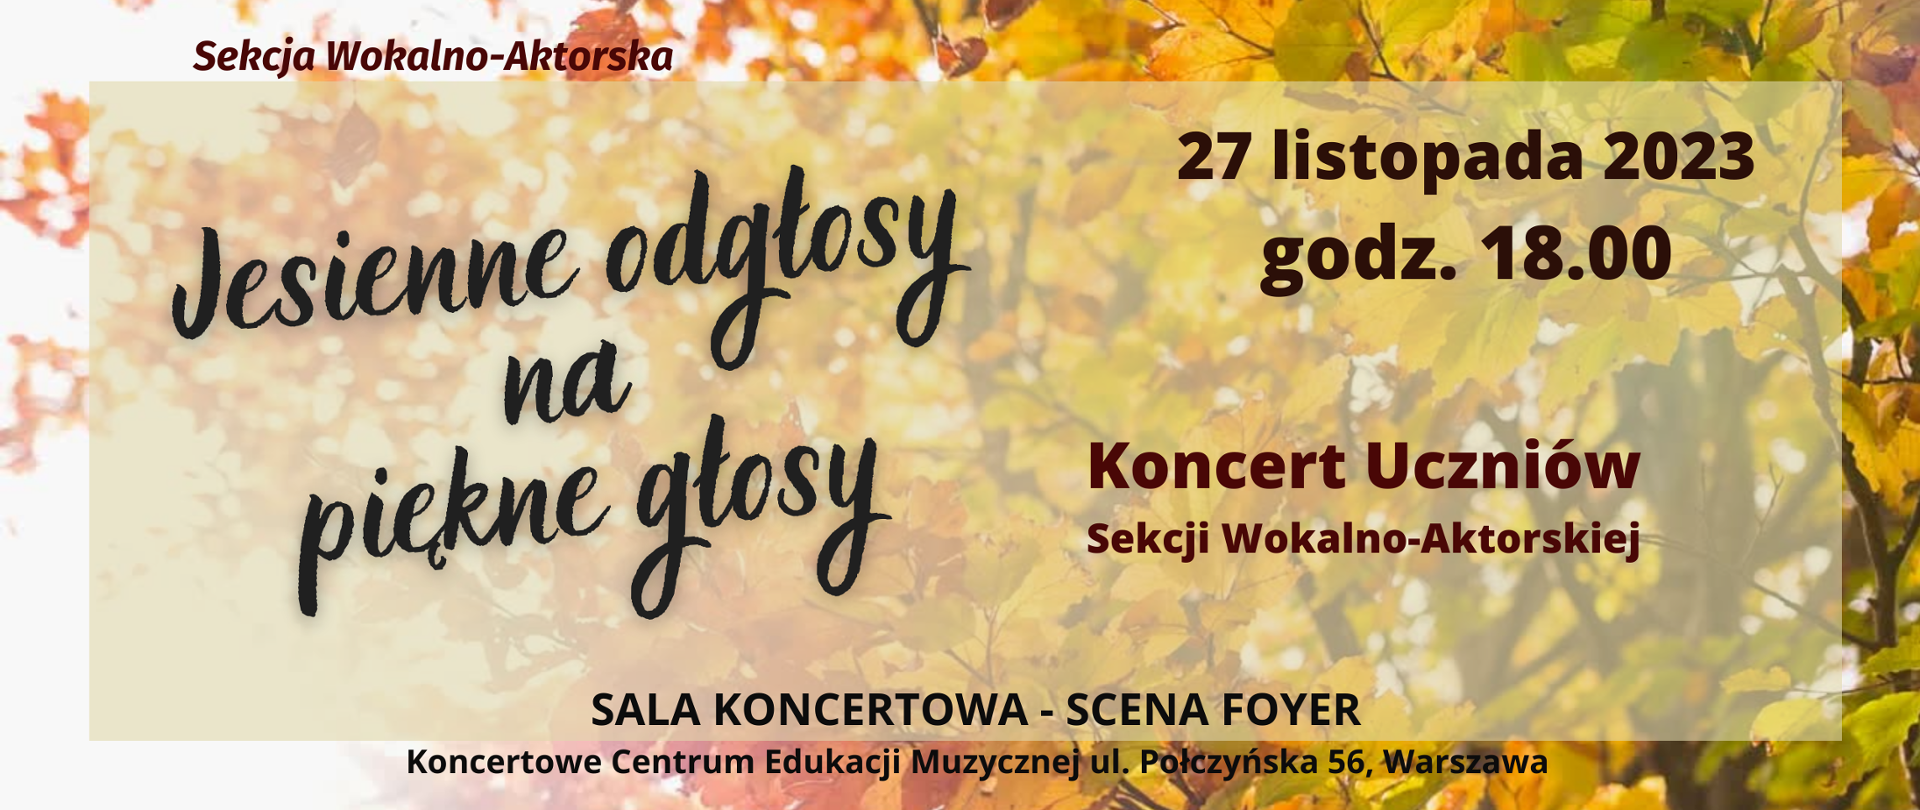 Afisz - Koncert Uczniów Sekcji Wokalno-Aktorskiej, ﻿27 listopada 2023, godz. 18.00, Scena Foyer